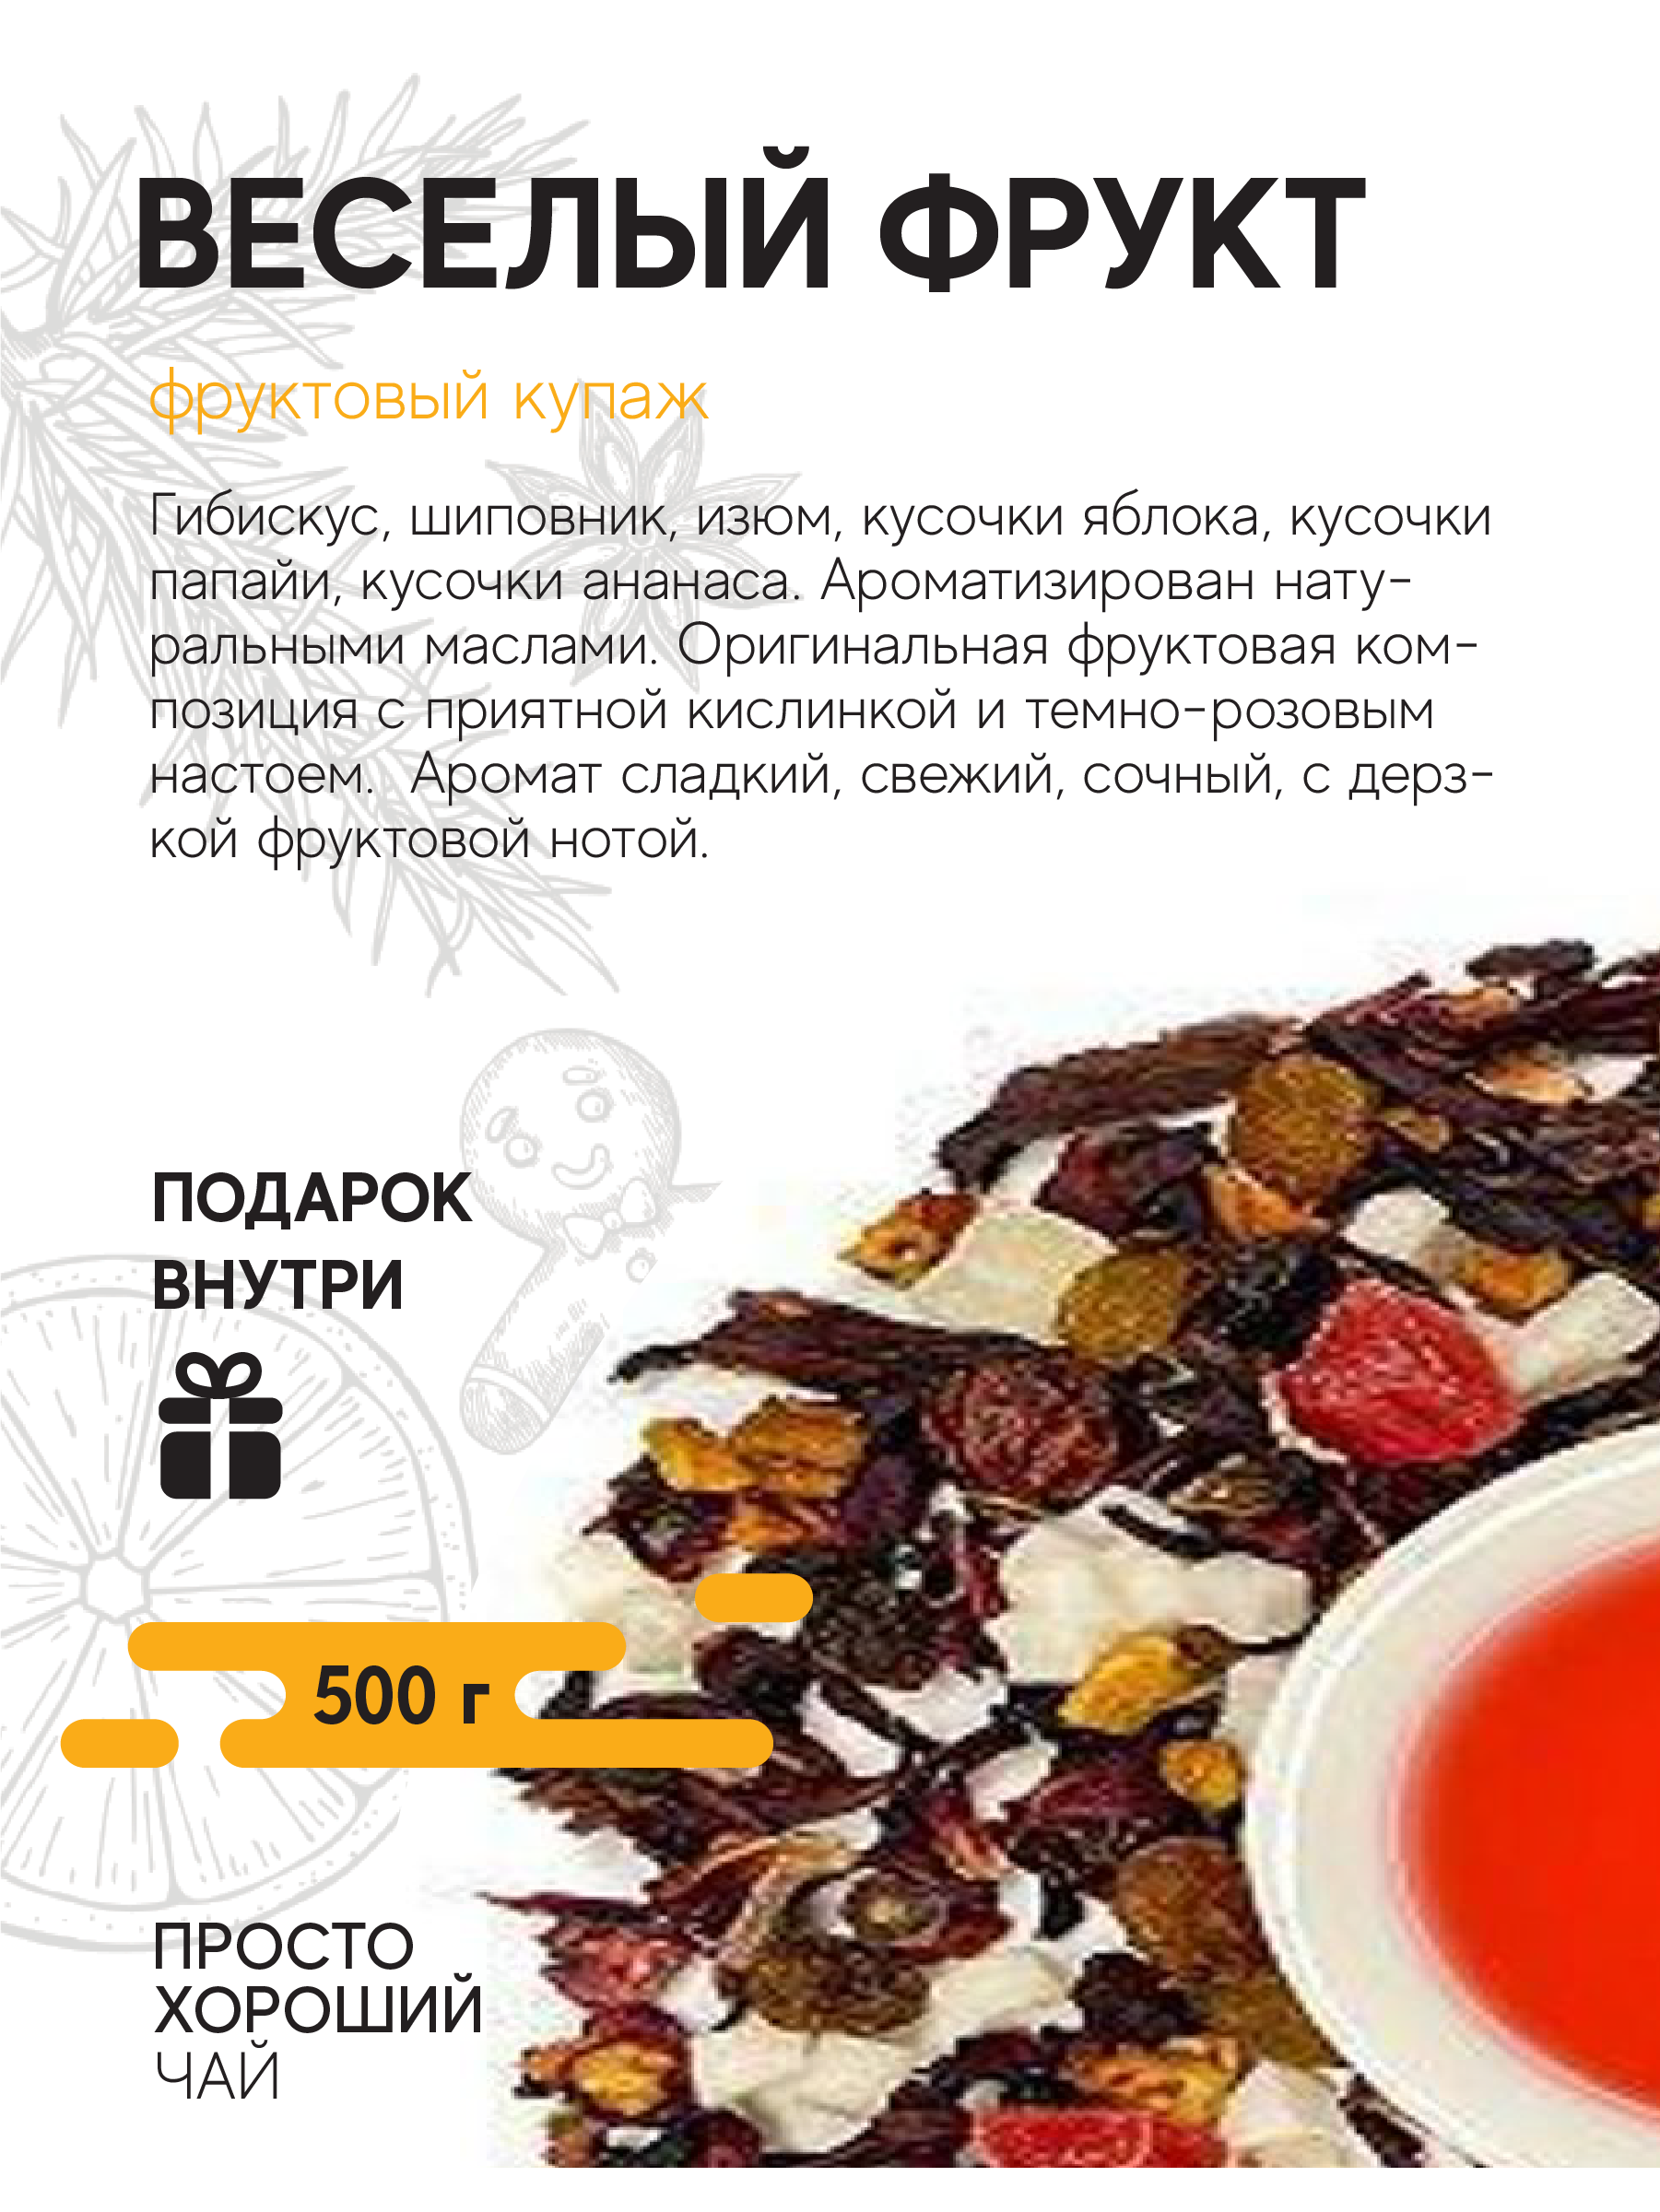 Фруктовый чай Веселый фрукт , 500гр.